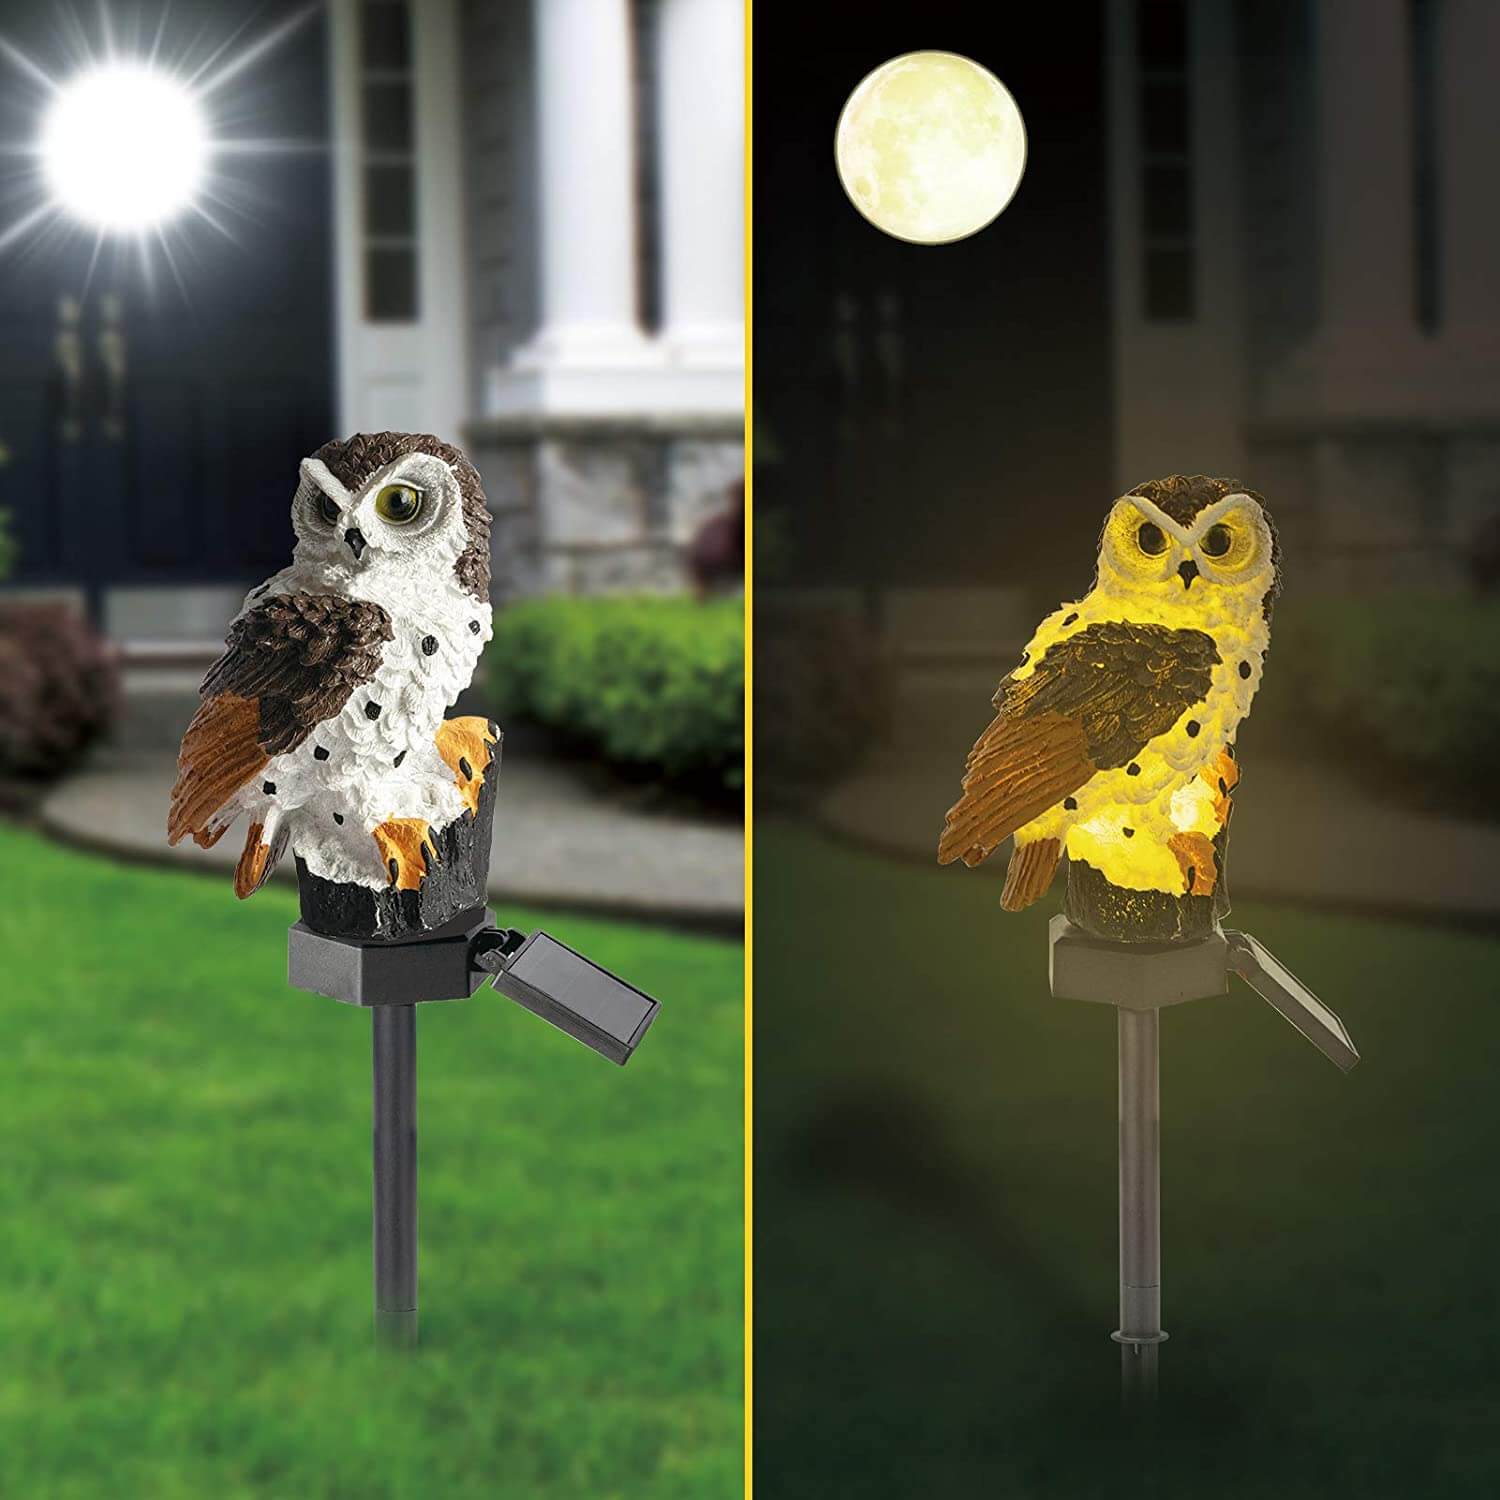 Outdoor Solar Power Gartenleuchten Owl Decor Path Rasen Light Yard LED M8V5 